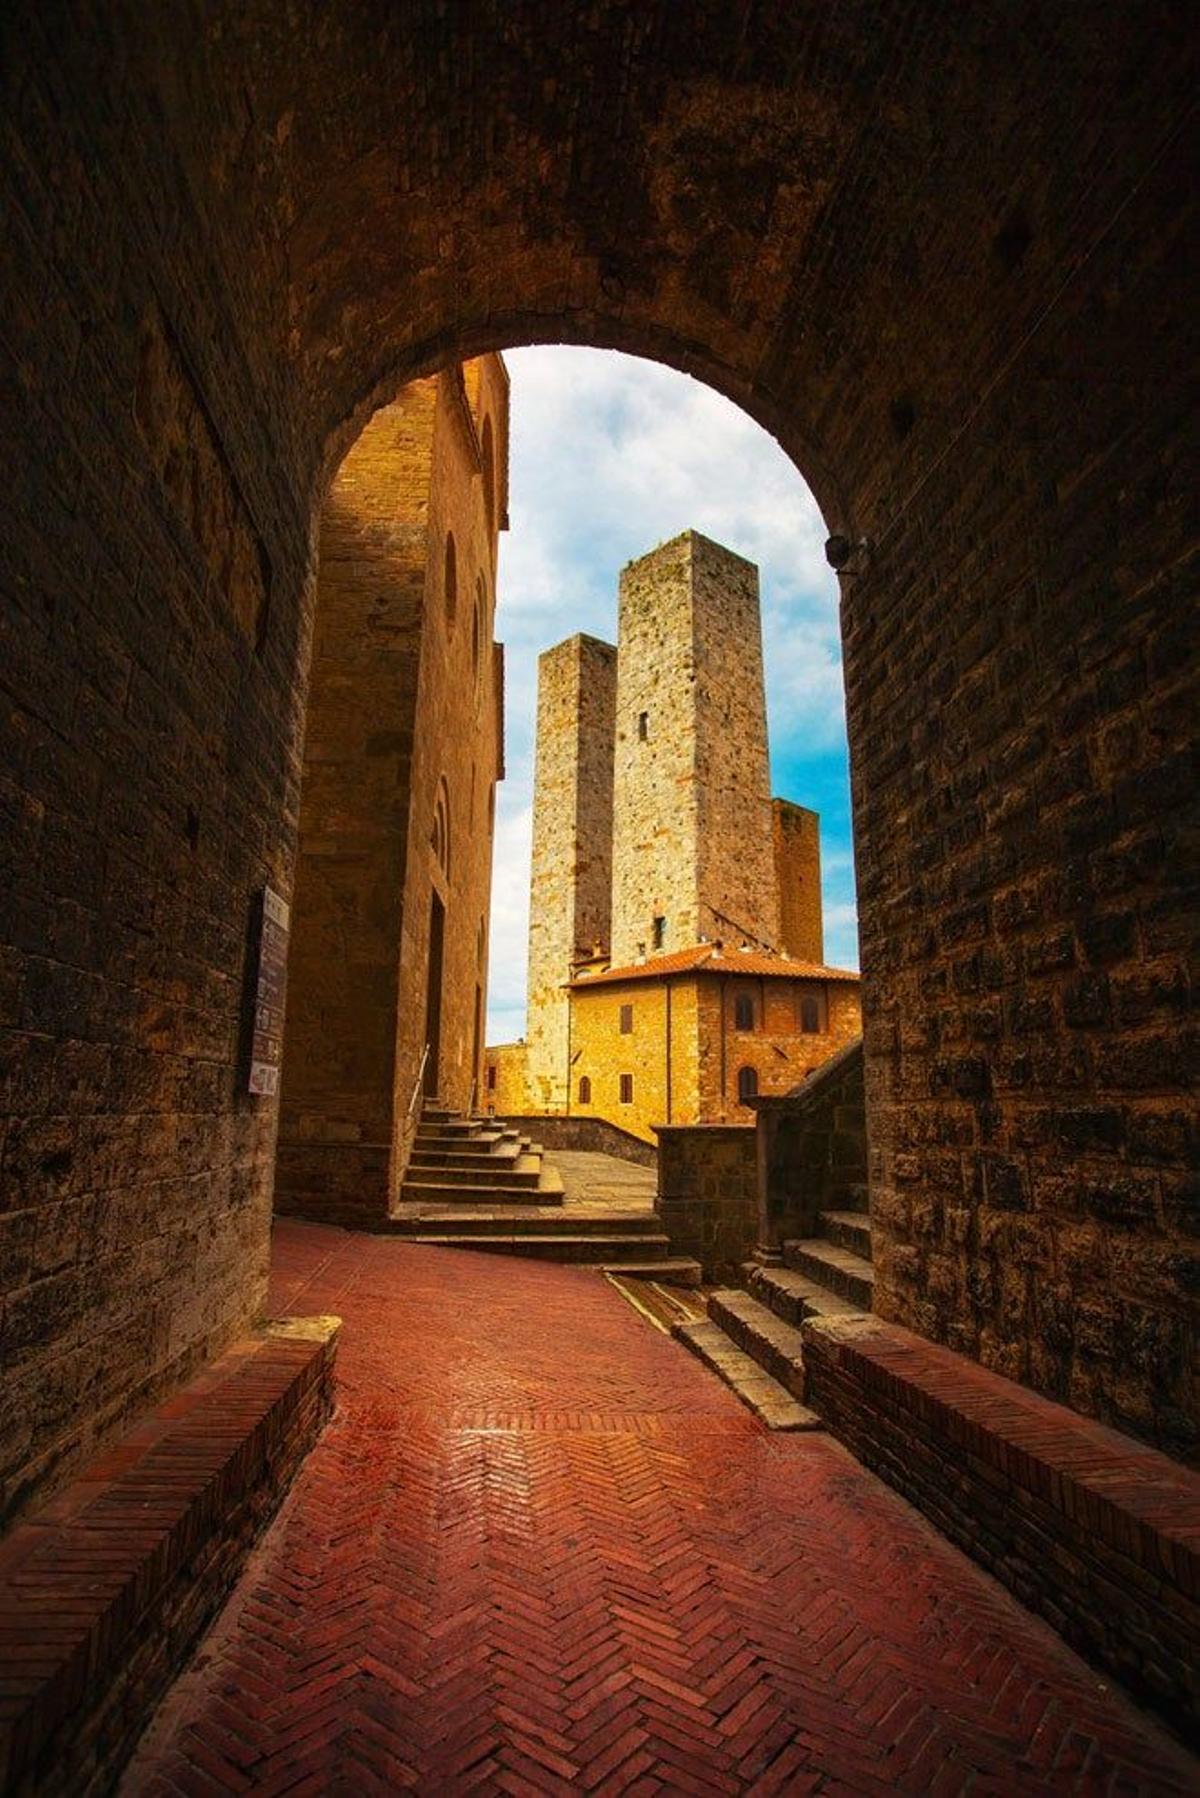 Atardecer sobre las torres de San Gimignano.